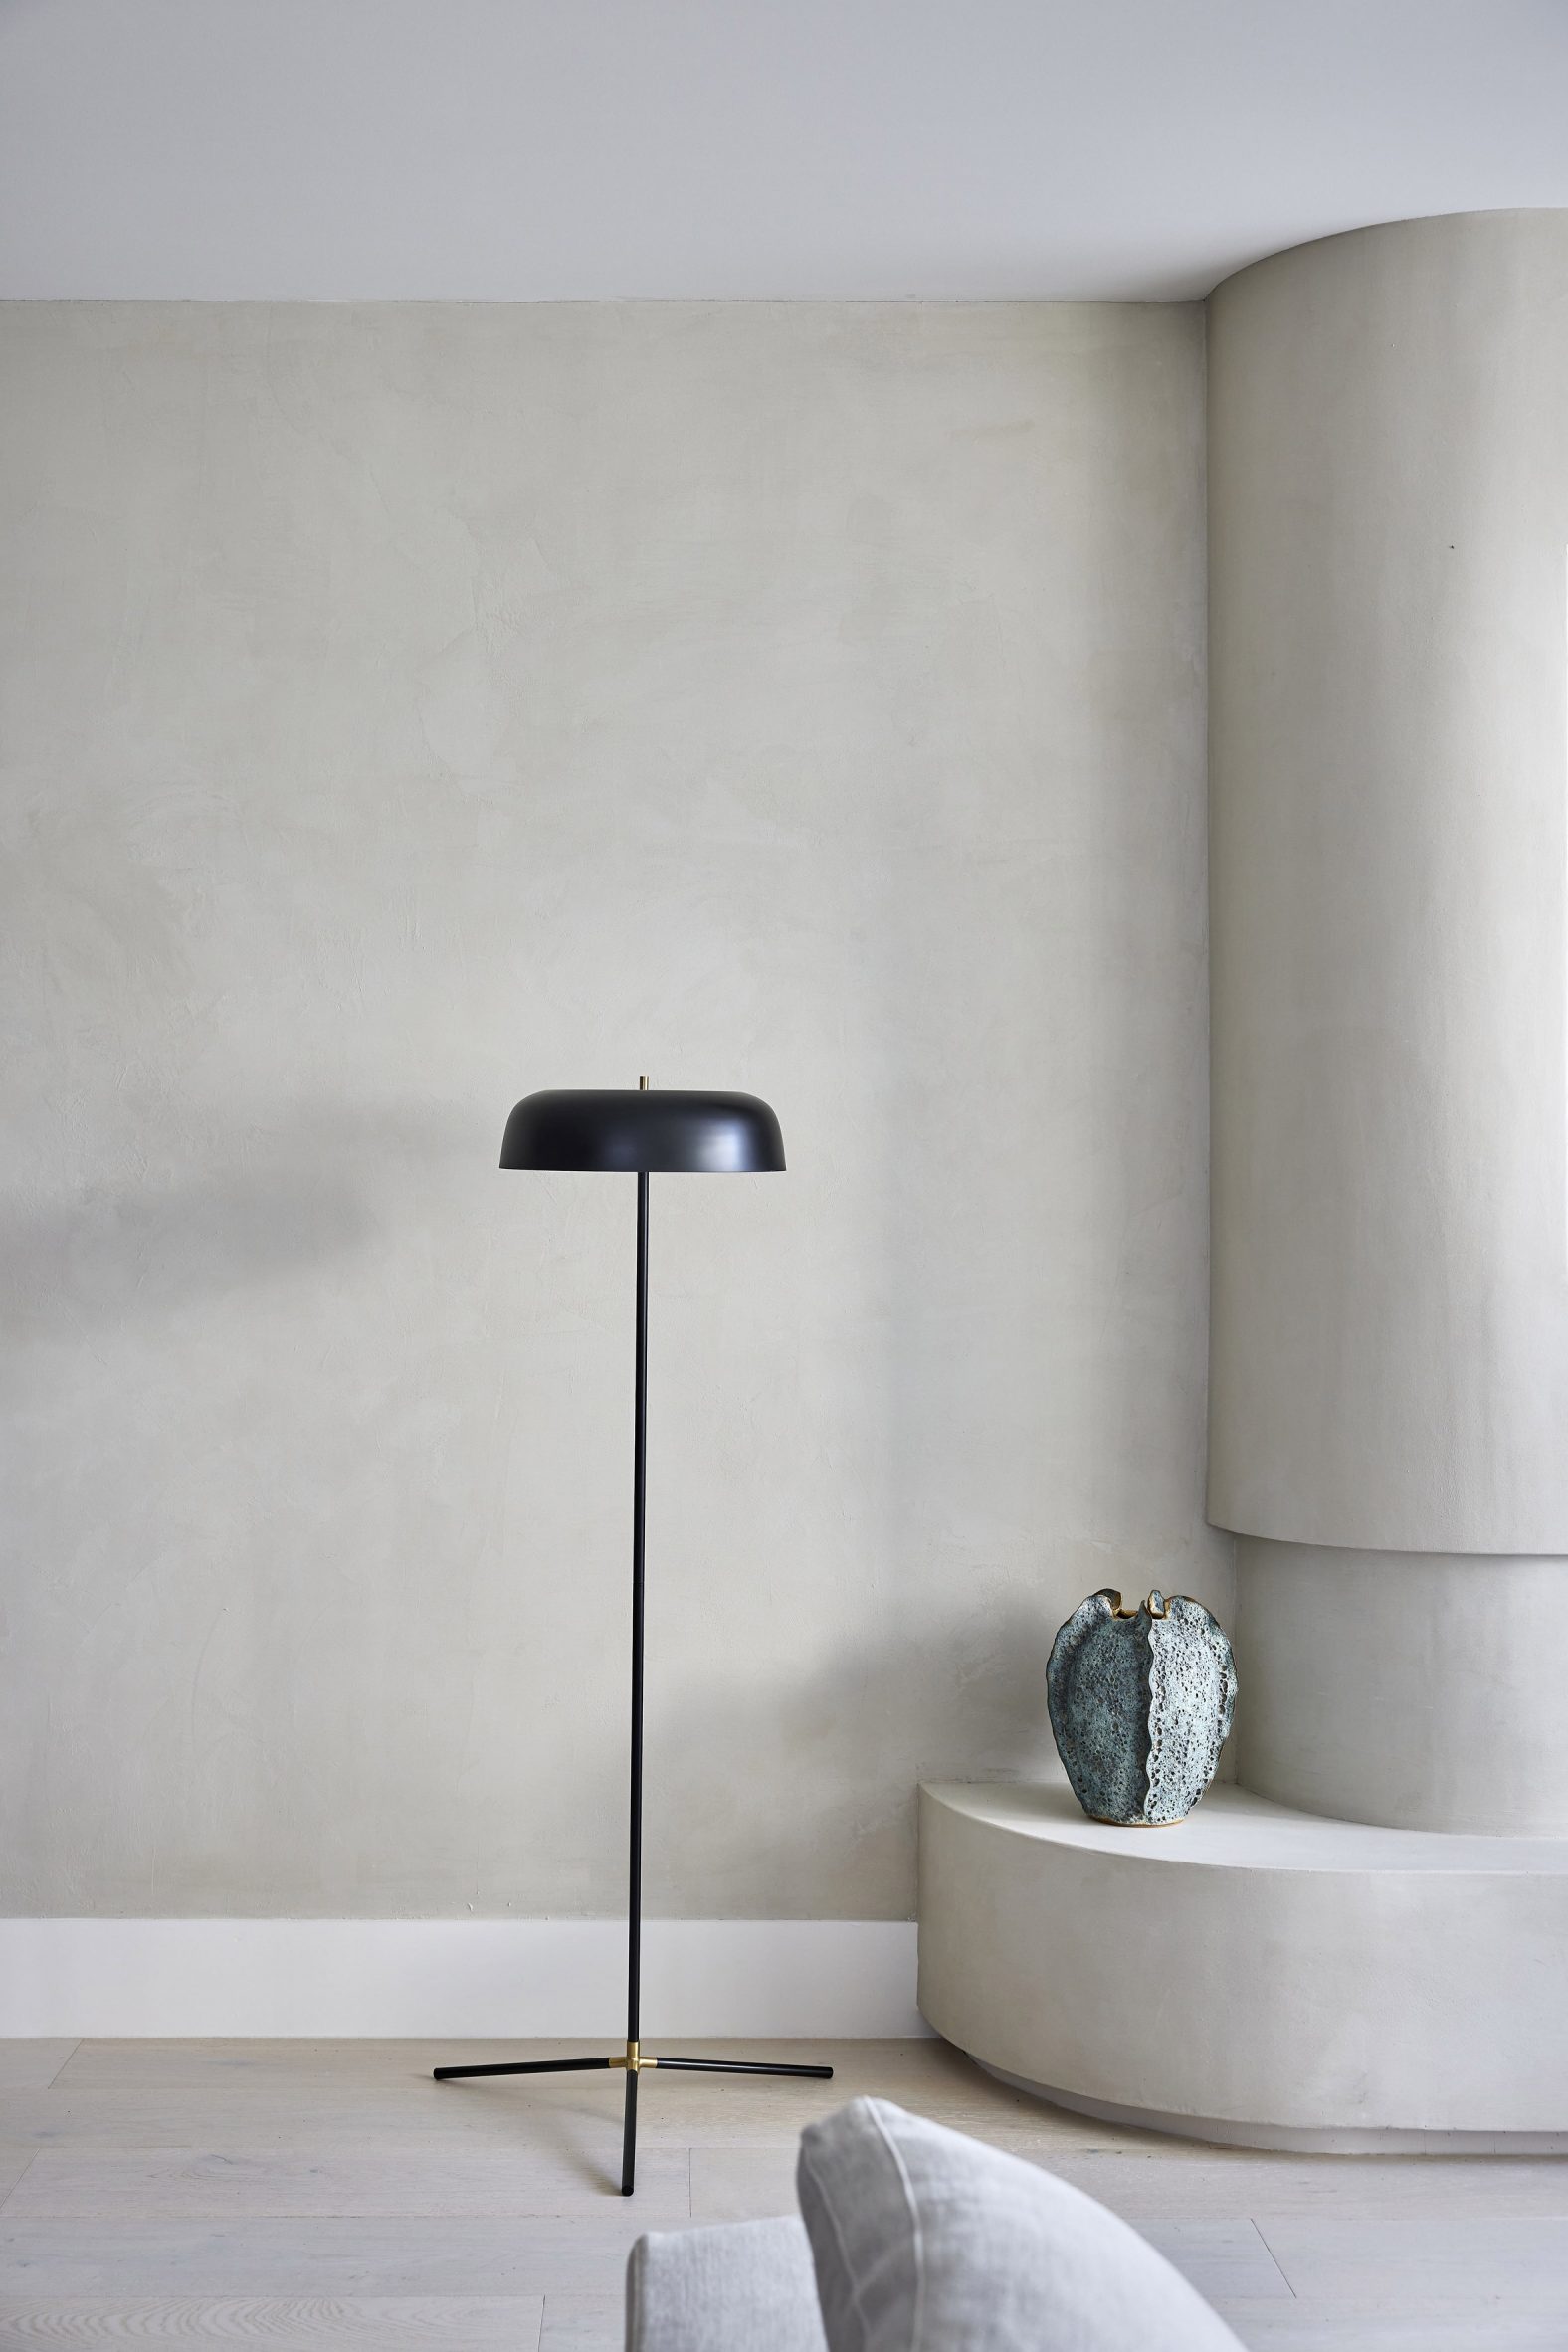 A single black lamp in a beige room